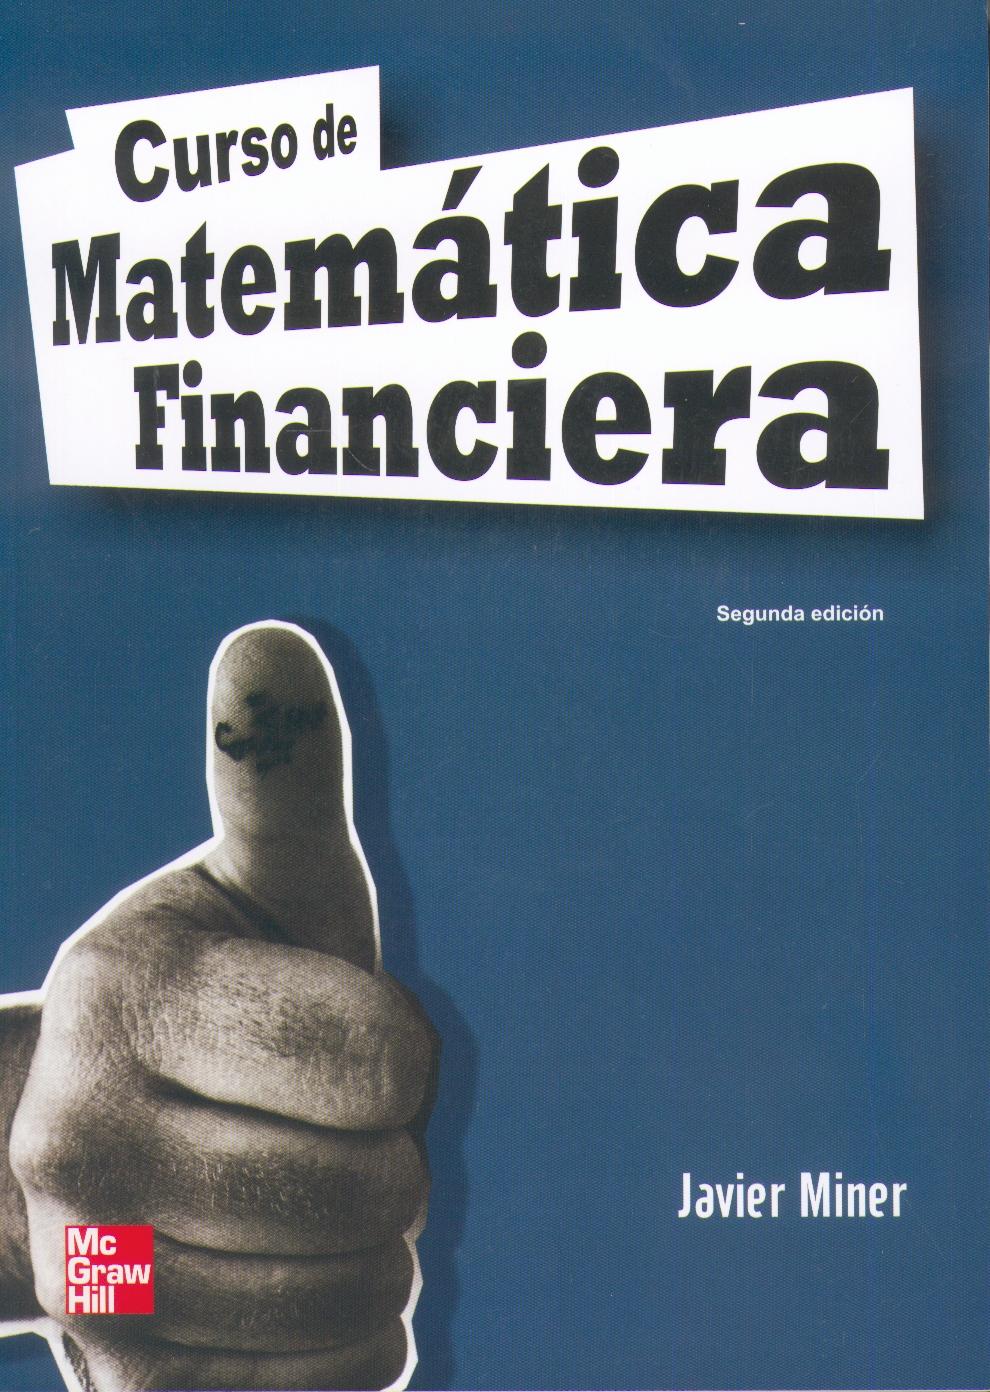 Curso de Matematica Financiera